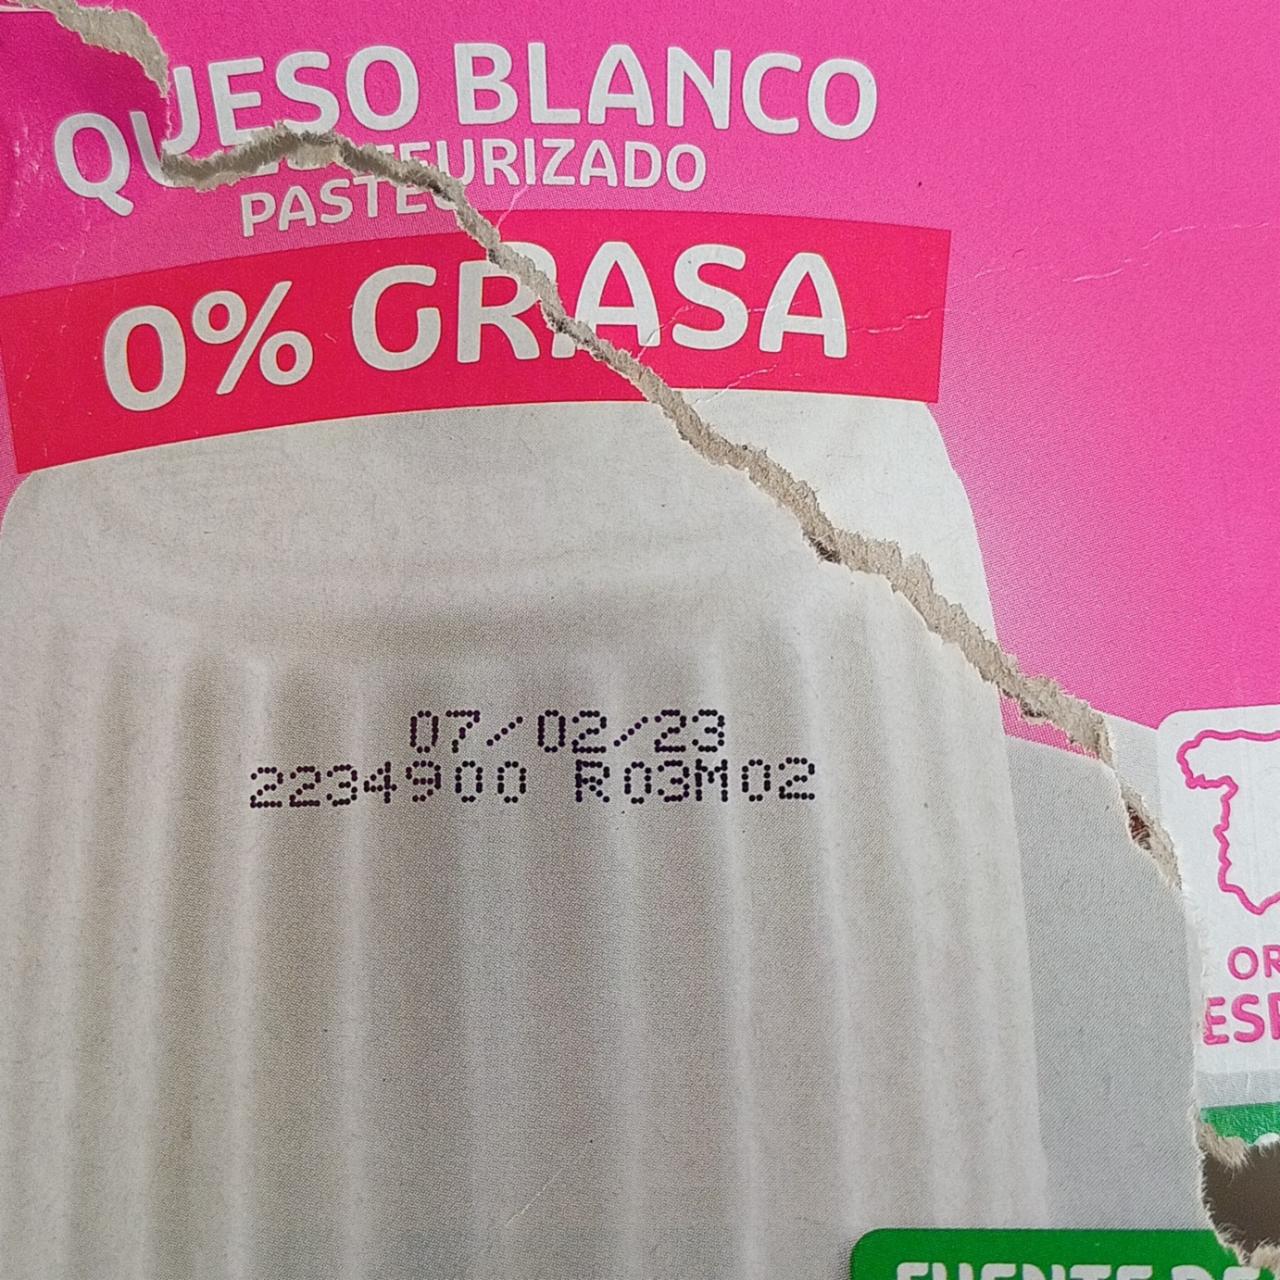 Fotografie - Queso Blanco pasteurizado 0% Grasa